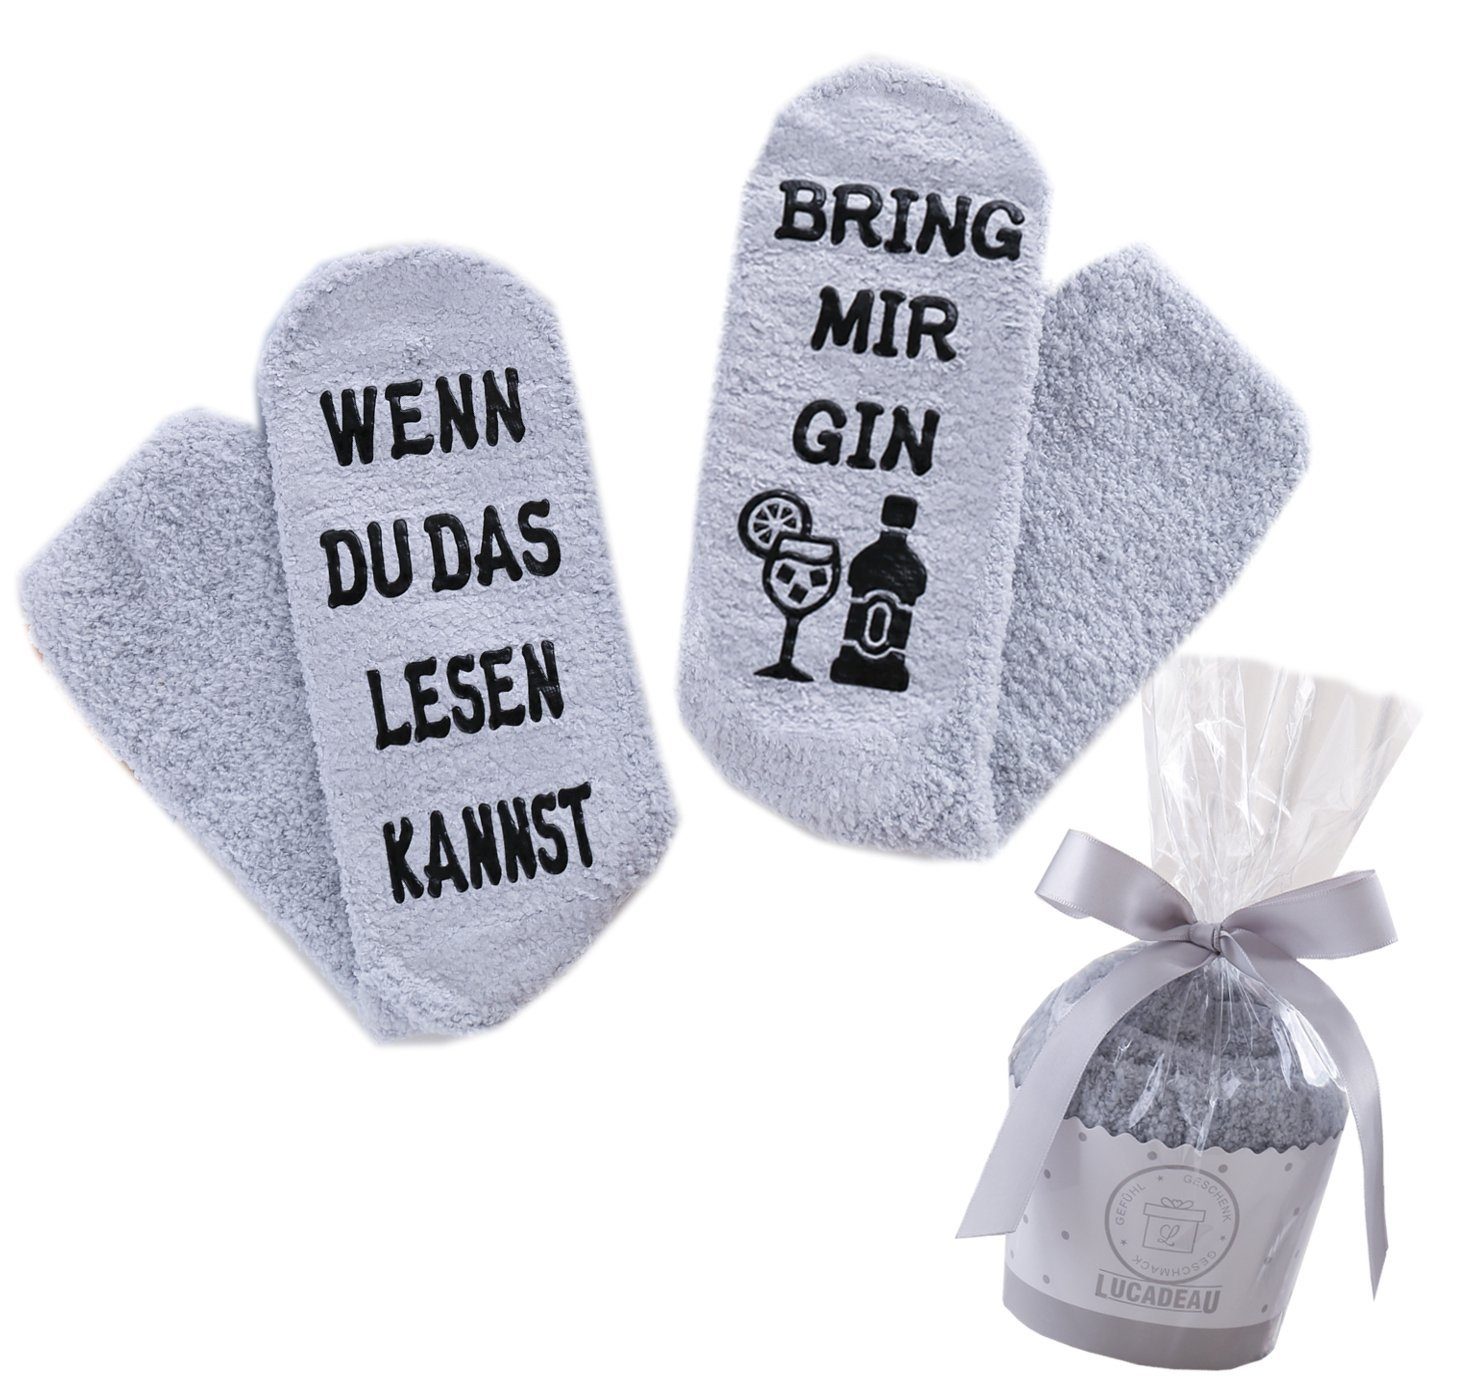 Lucadeau Kuschelsocken mit Spruch "Wenn du das lesen kannst, bring mir Gin" (Cupcake Verpackung, Gr. 36-43) rutschfest, Geschenke für Frauen, Geburtstagsgeschenk Grau